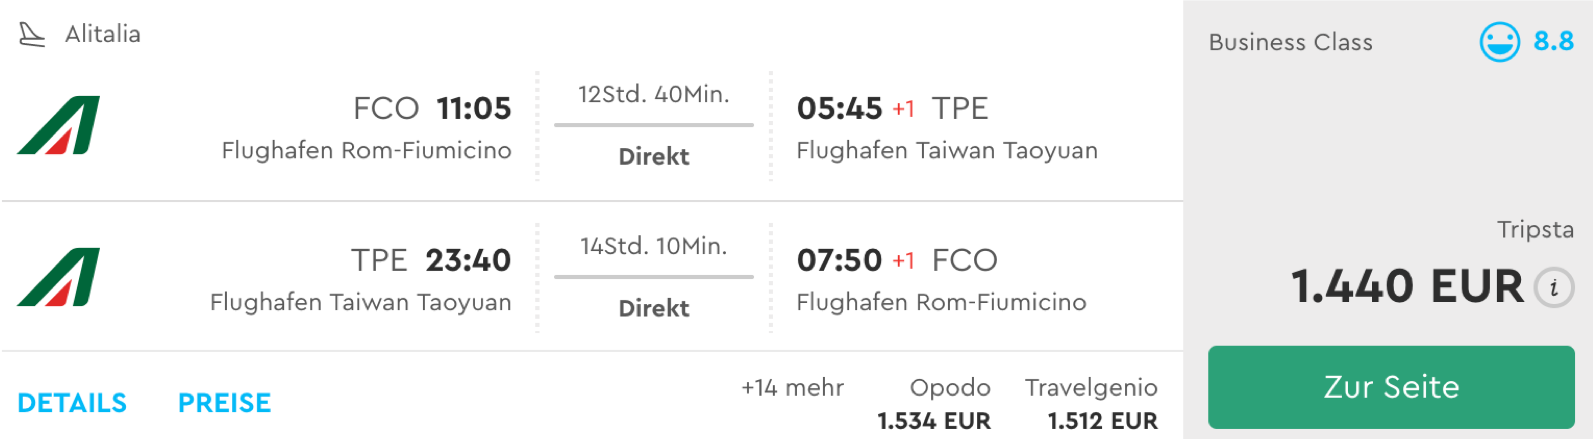 Günstige Business Class Flüge nach Taipeh